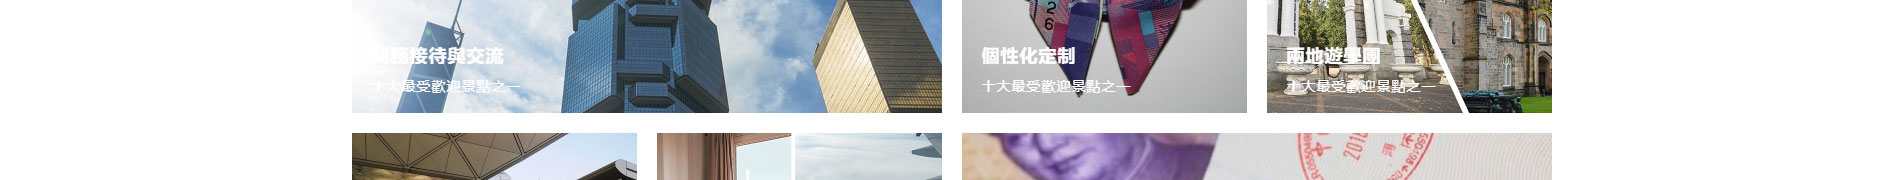 旅游行业案例_网页设计公司_网站设计公司_深圳网站制作